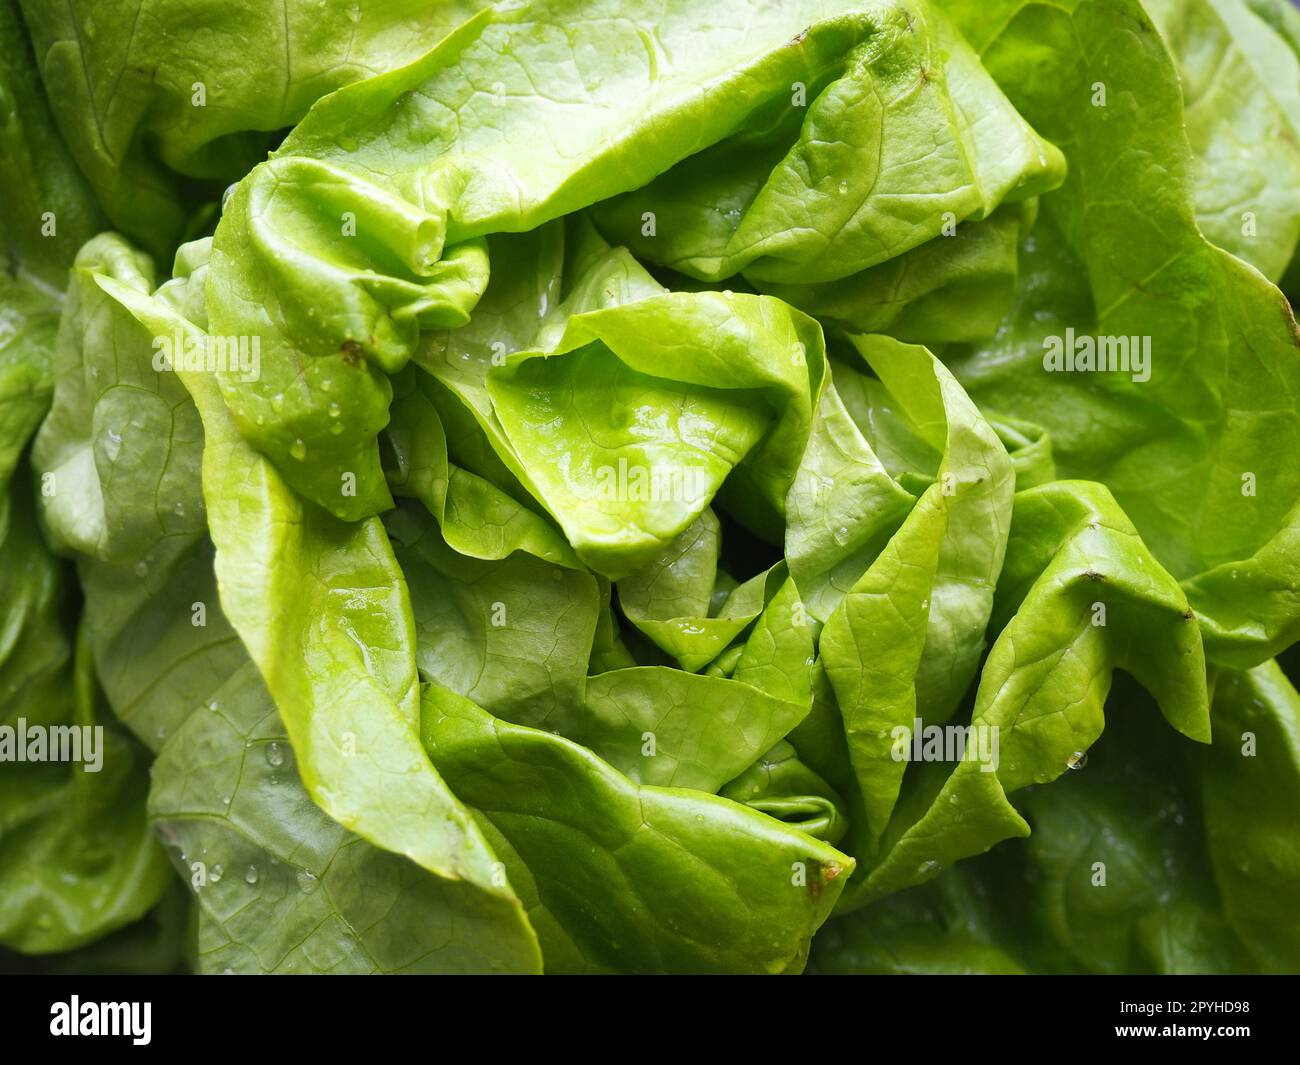 Salat. Ein Jahreskraut der Gattung Salat der Familie Asteraceae. Köstliche, verstärkte Blätter. Grüner Salat oder Beilage. Frische Kräuter für gesunde Ernährung Stockfoto